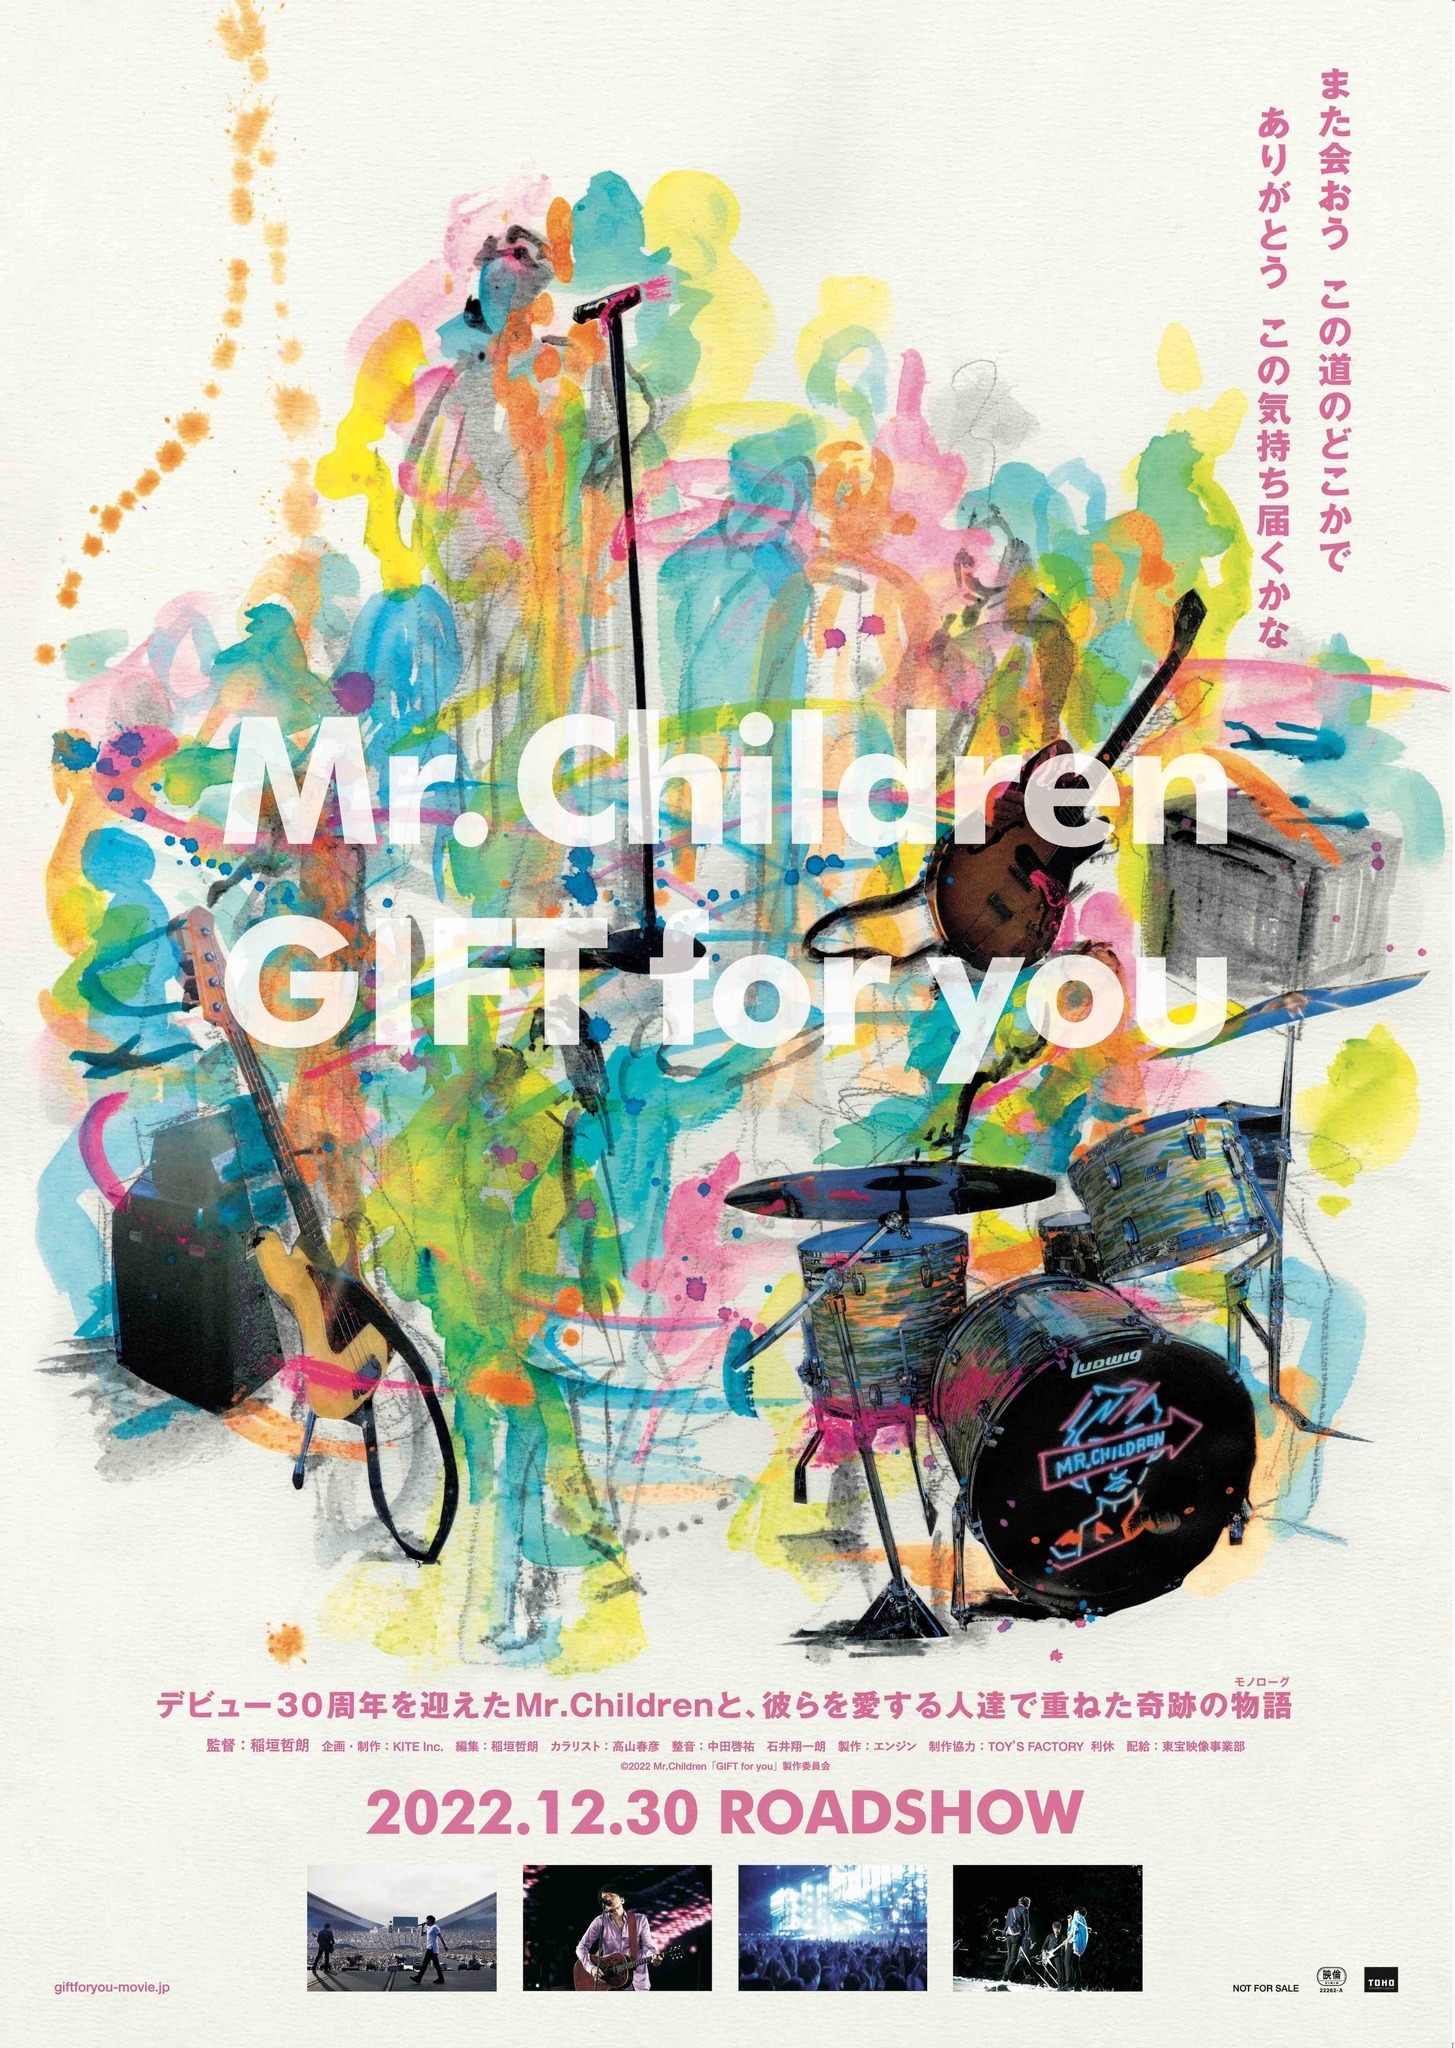 ミスチル映画『GIFT for you』予告映像公開 | cinemacafe.net